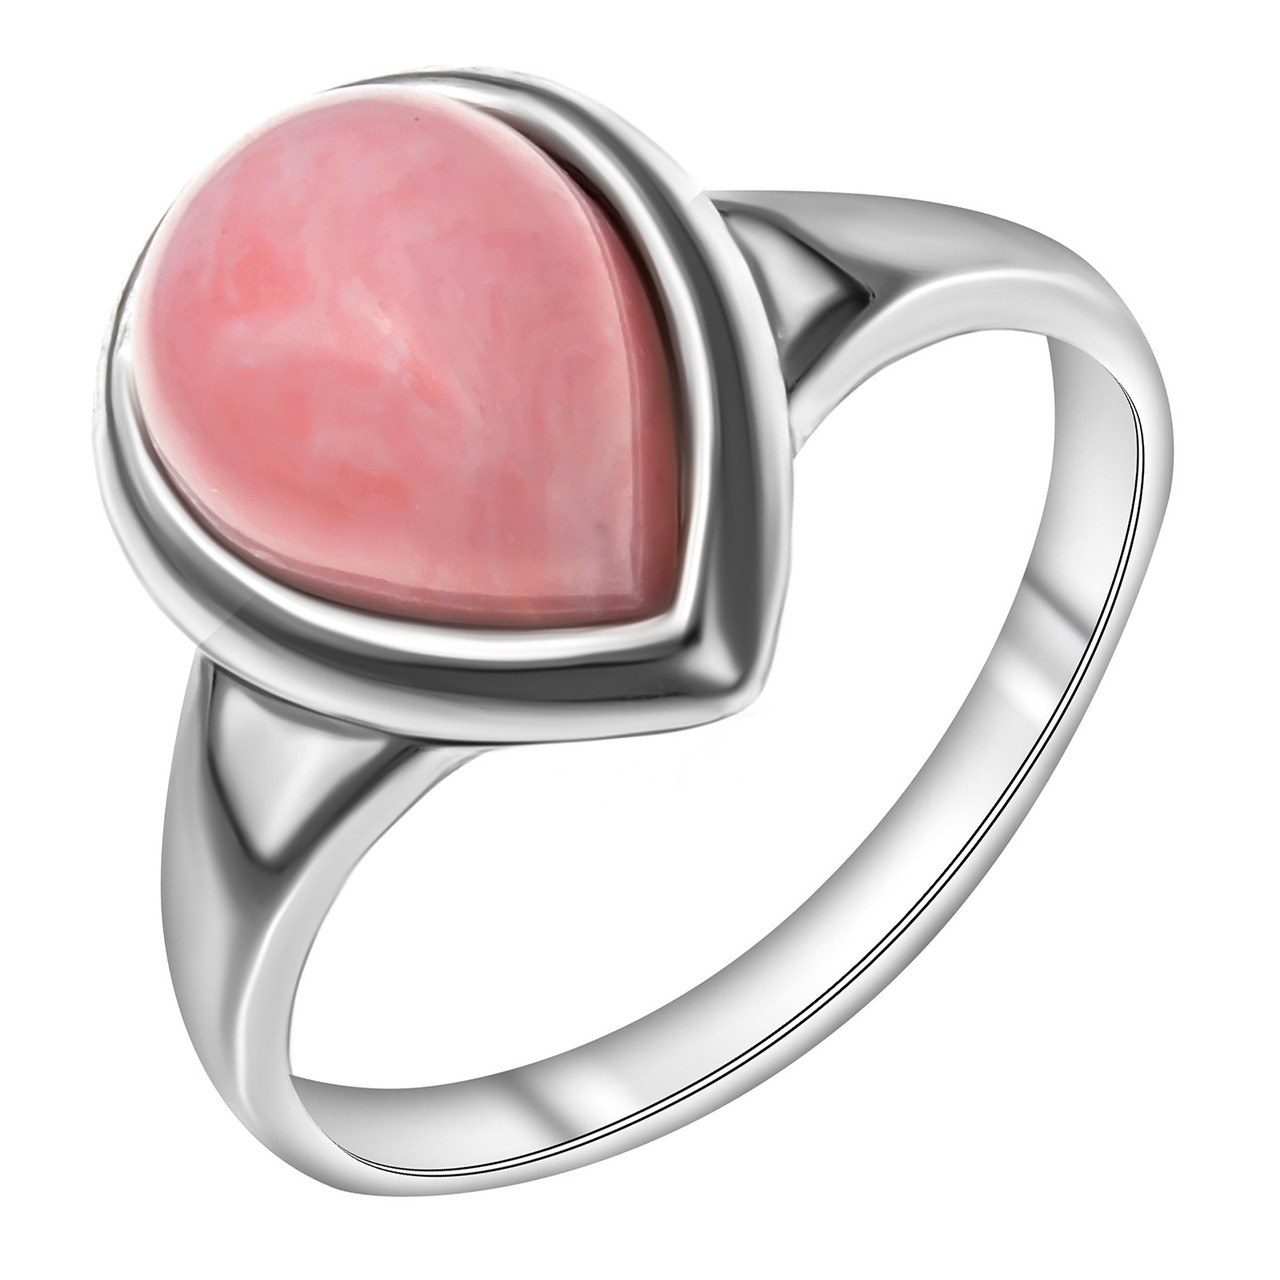 Кольцо из серебра с ониксом синт. и кварцем розовым синт.  920P11030aa покрыто  родием